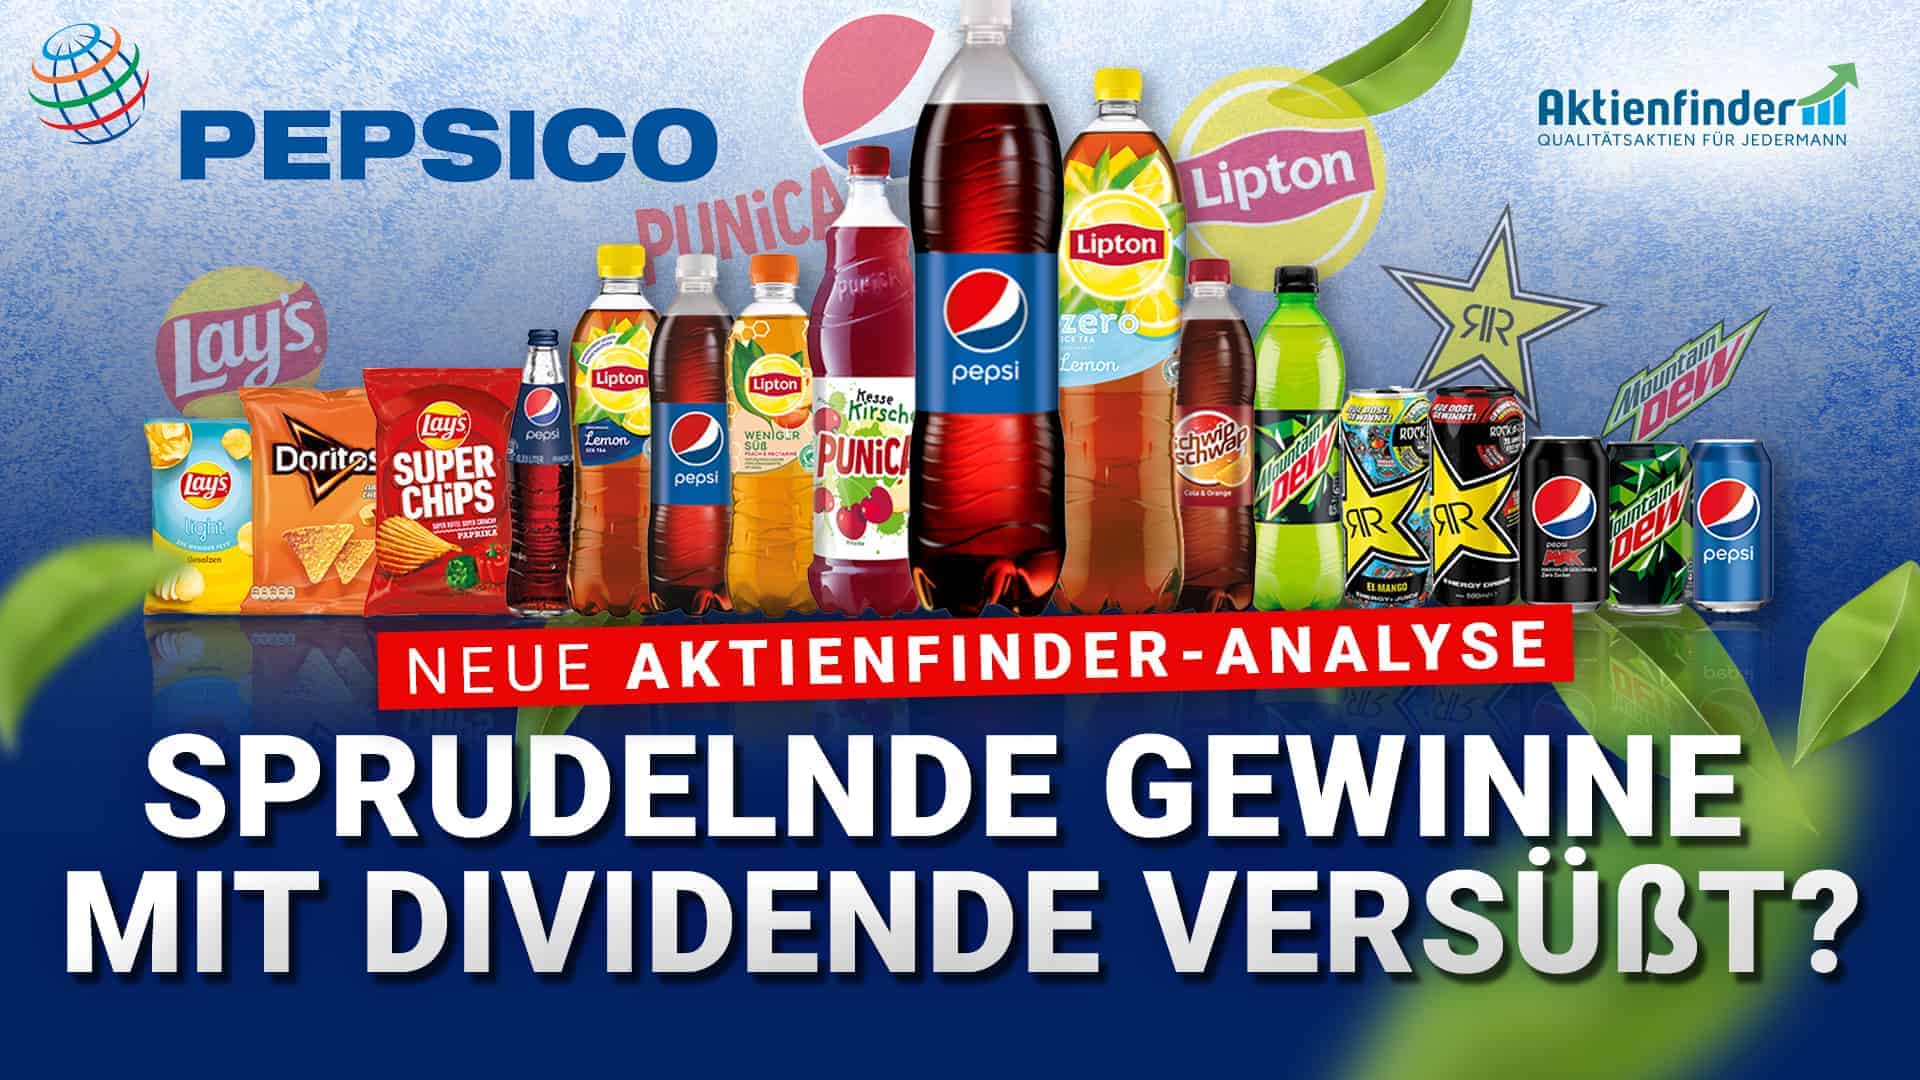 Pepsi Aktie - Sprudelnde Gewinne mit Dividende versuesst